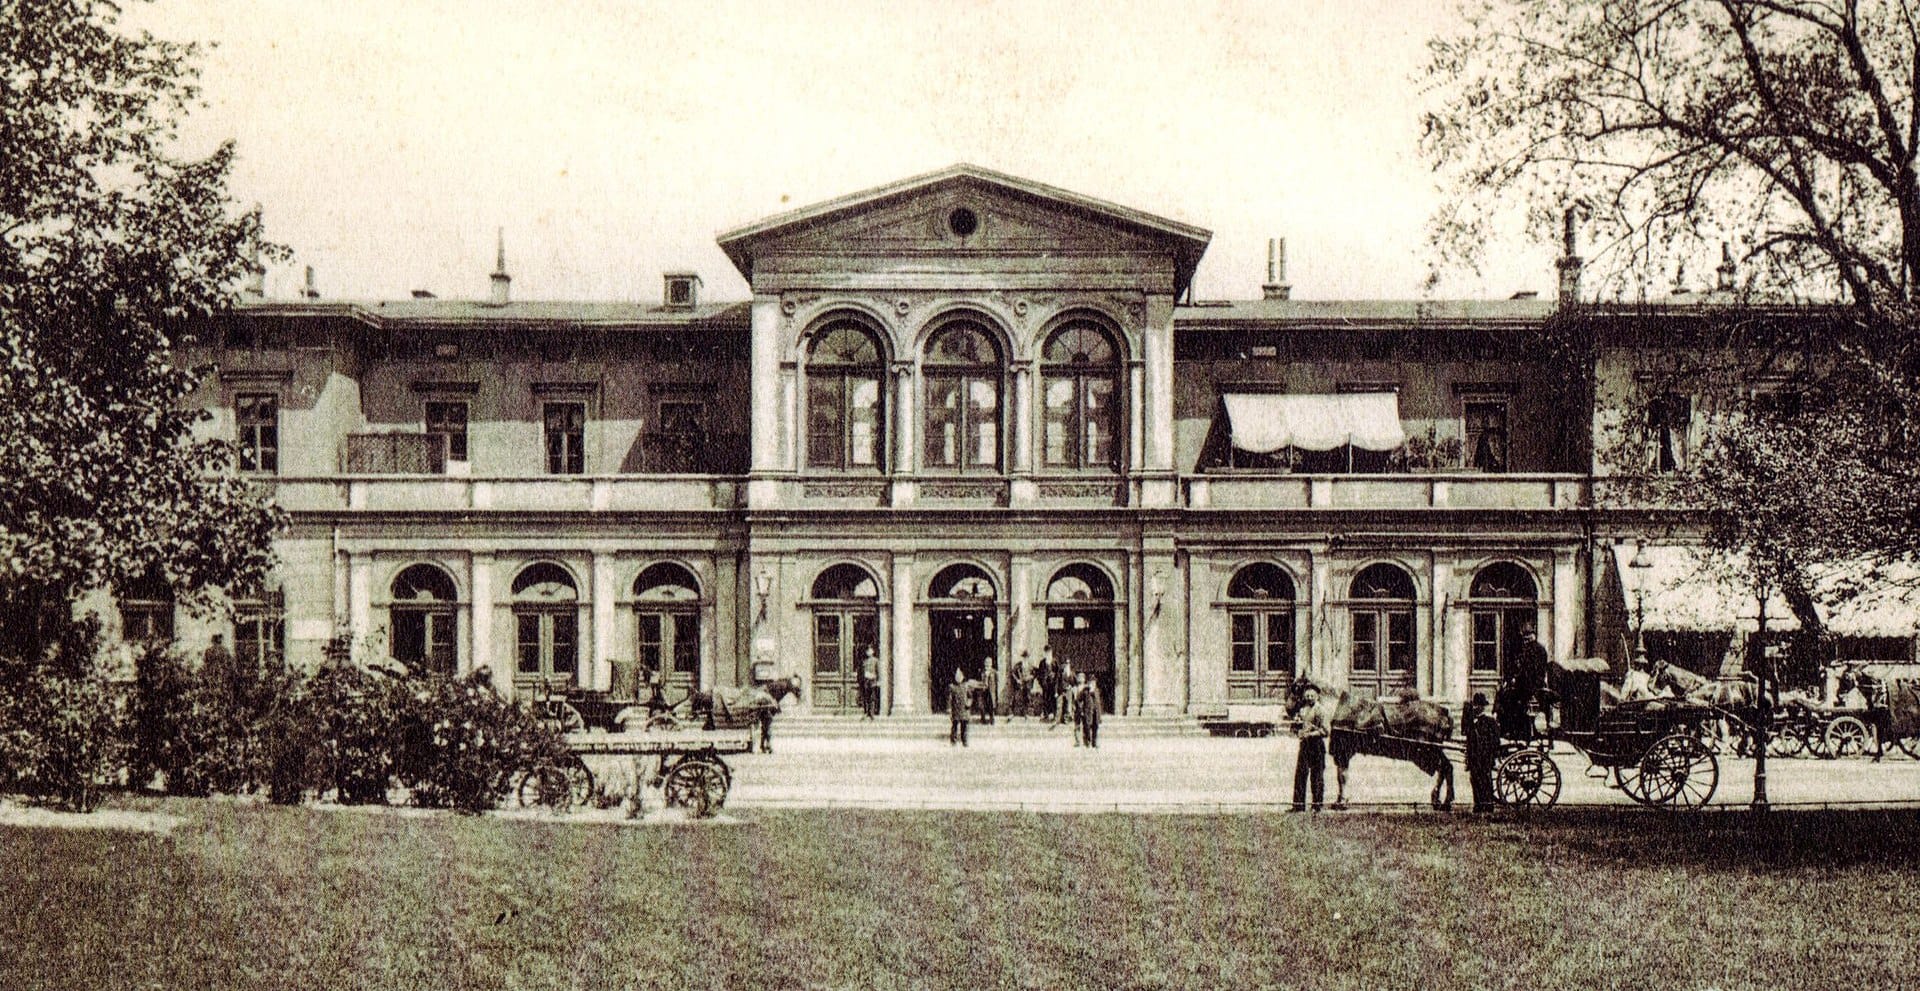 Das alte Bahnhofsgebäude am Bahnhof Dammtor um 1900: Wenige Jahre später wurde die neue Empfangshalle errichtet.